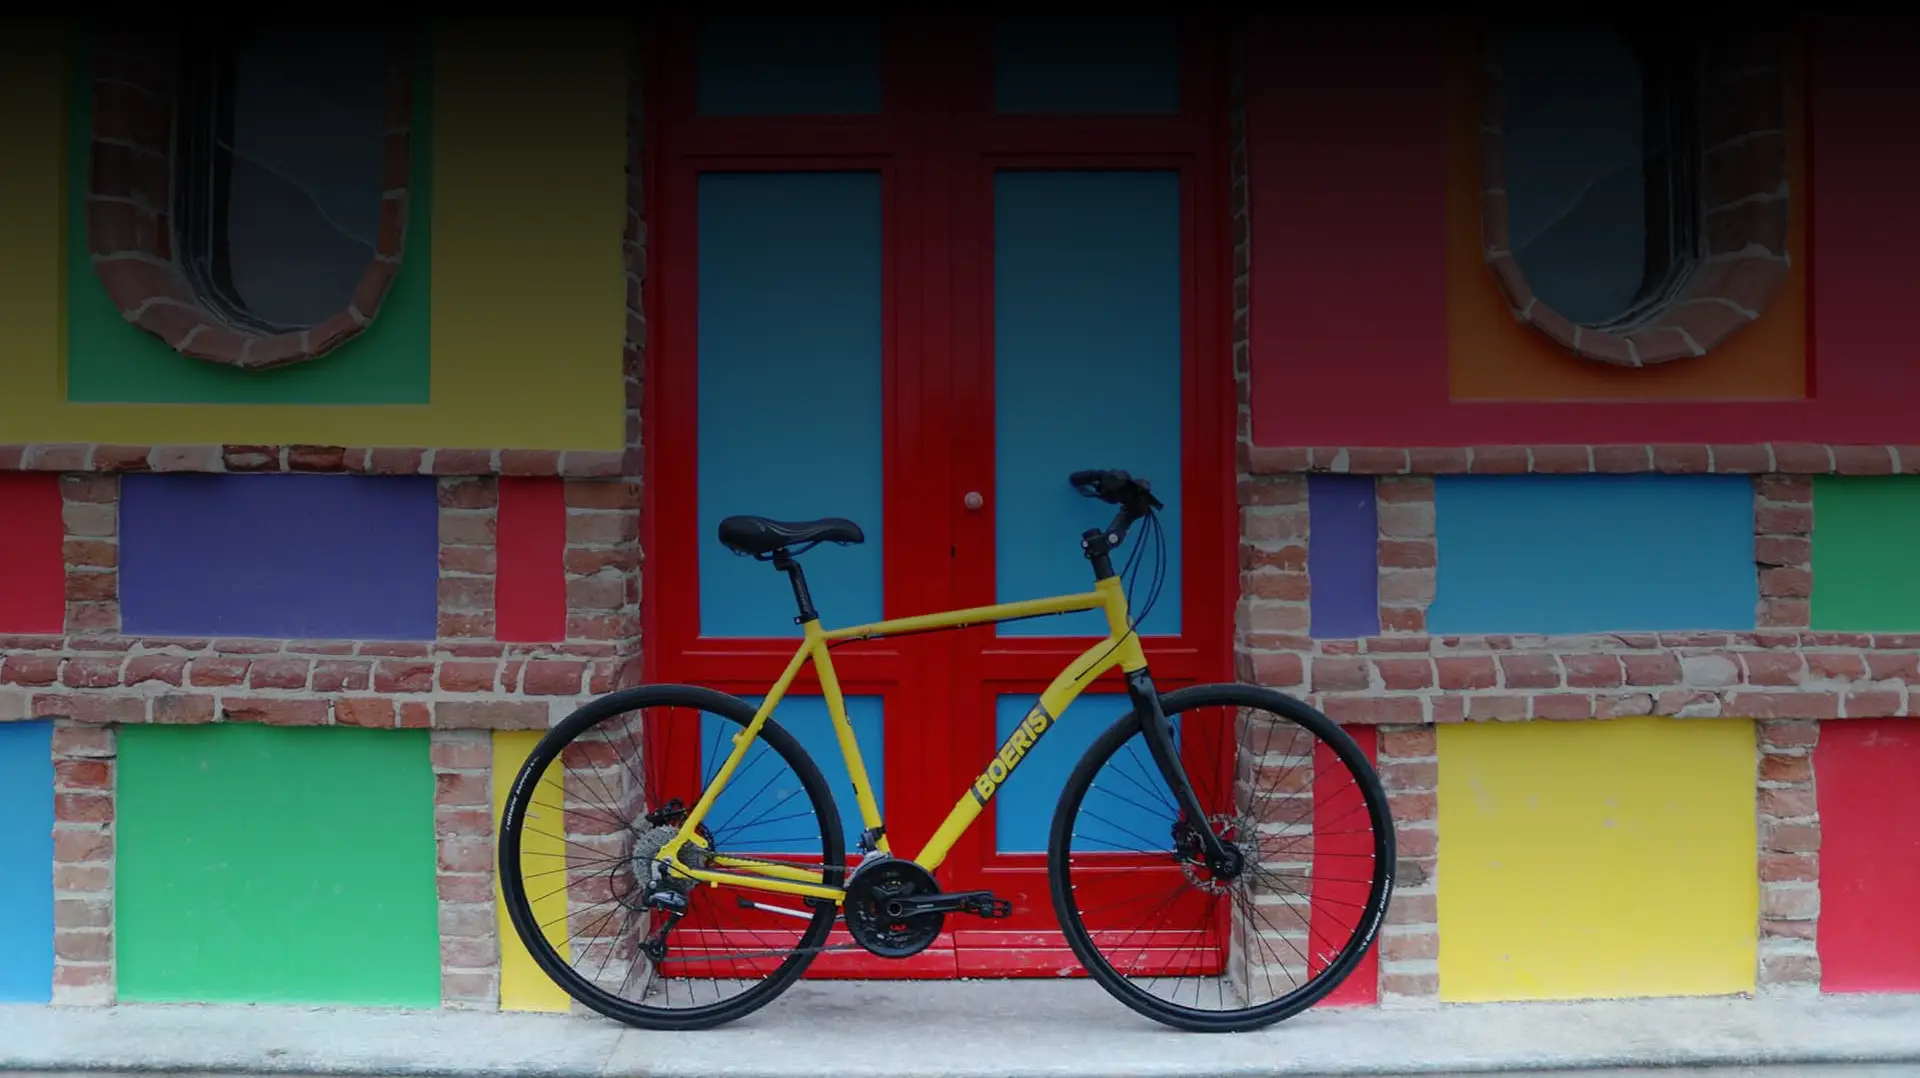 Bicicletta da strada gialla di Boeris Bikes Torino appoggiata ad una porta rossa e azzurra e un muro di mattoni colorato